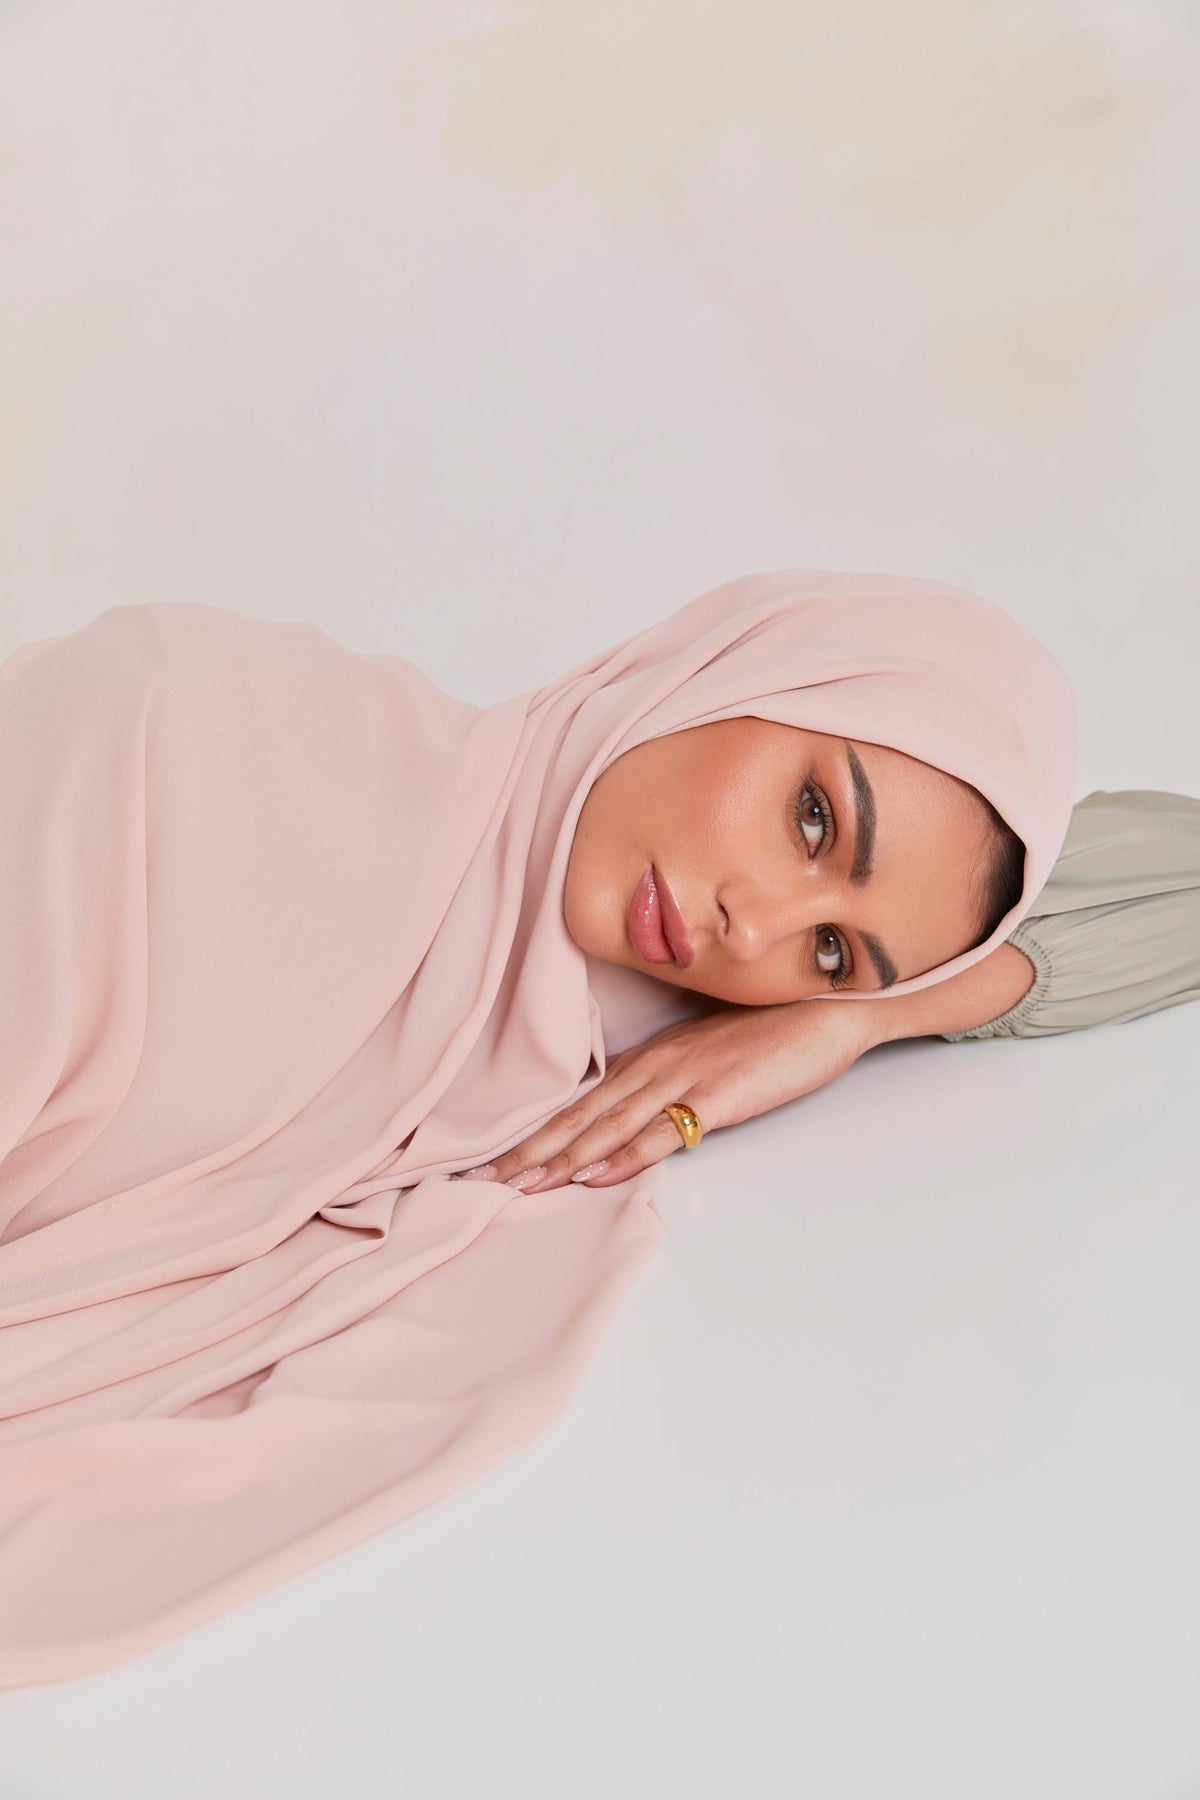 Premium Chiffon Hijab - Doha epschoolboard 